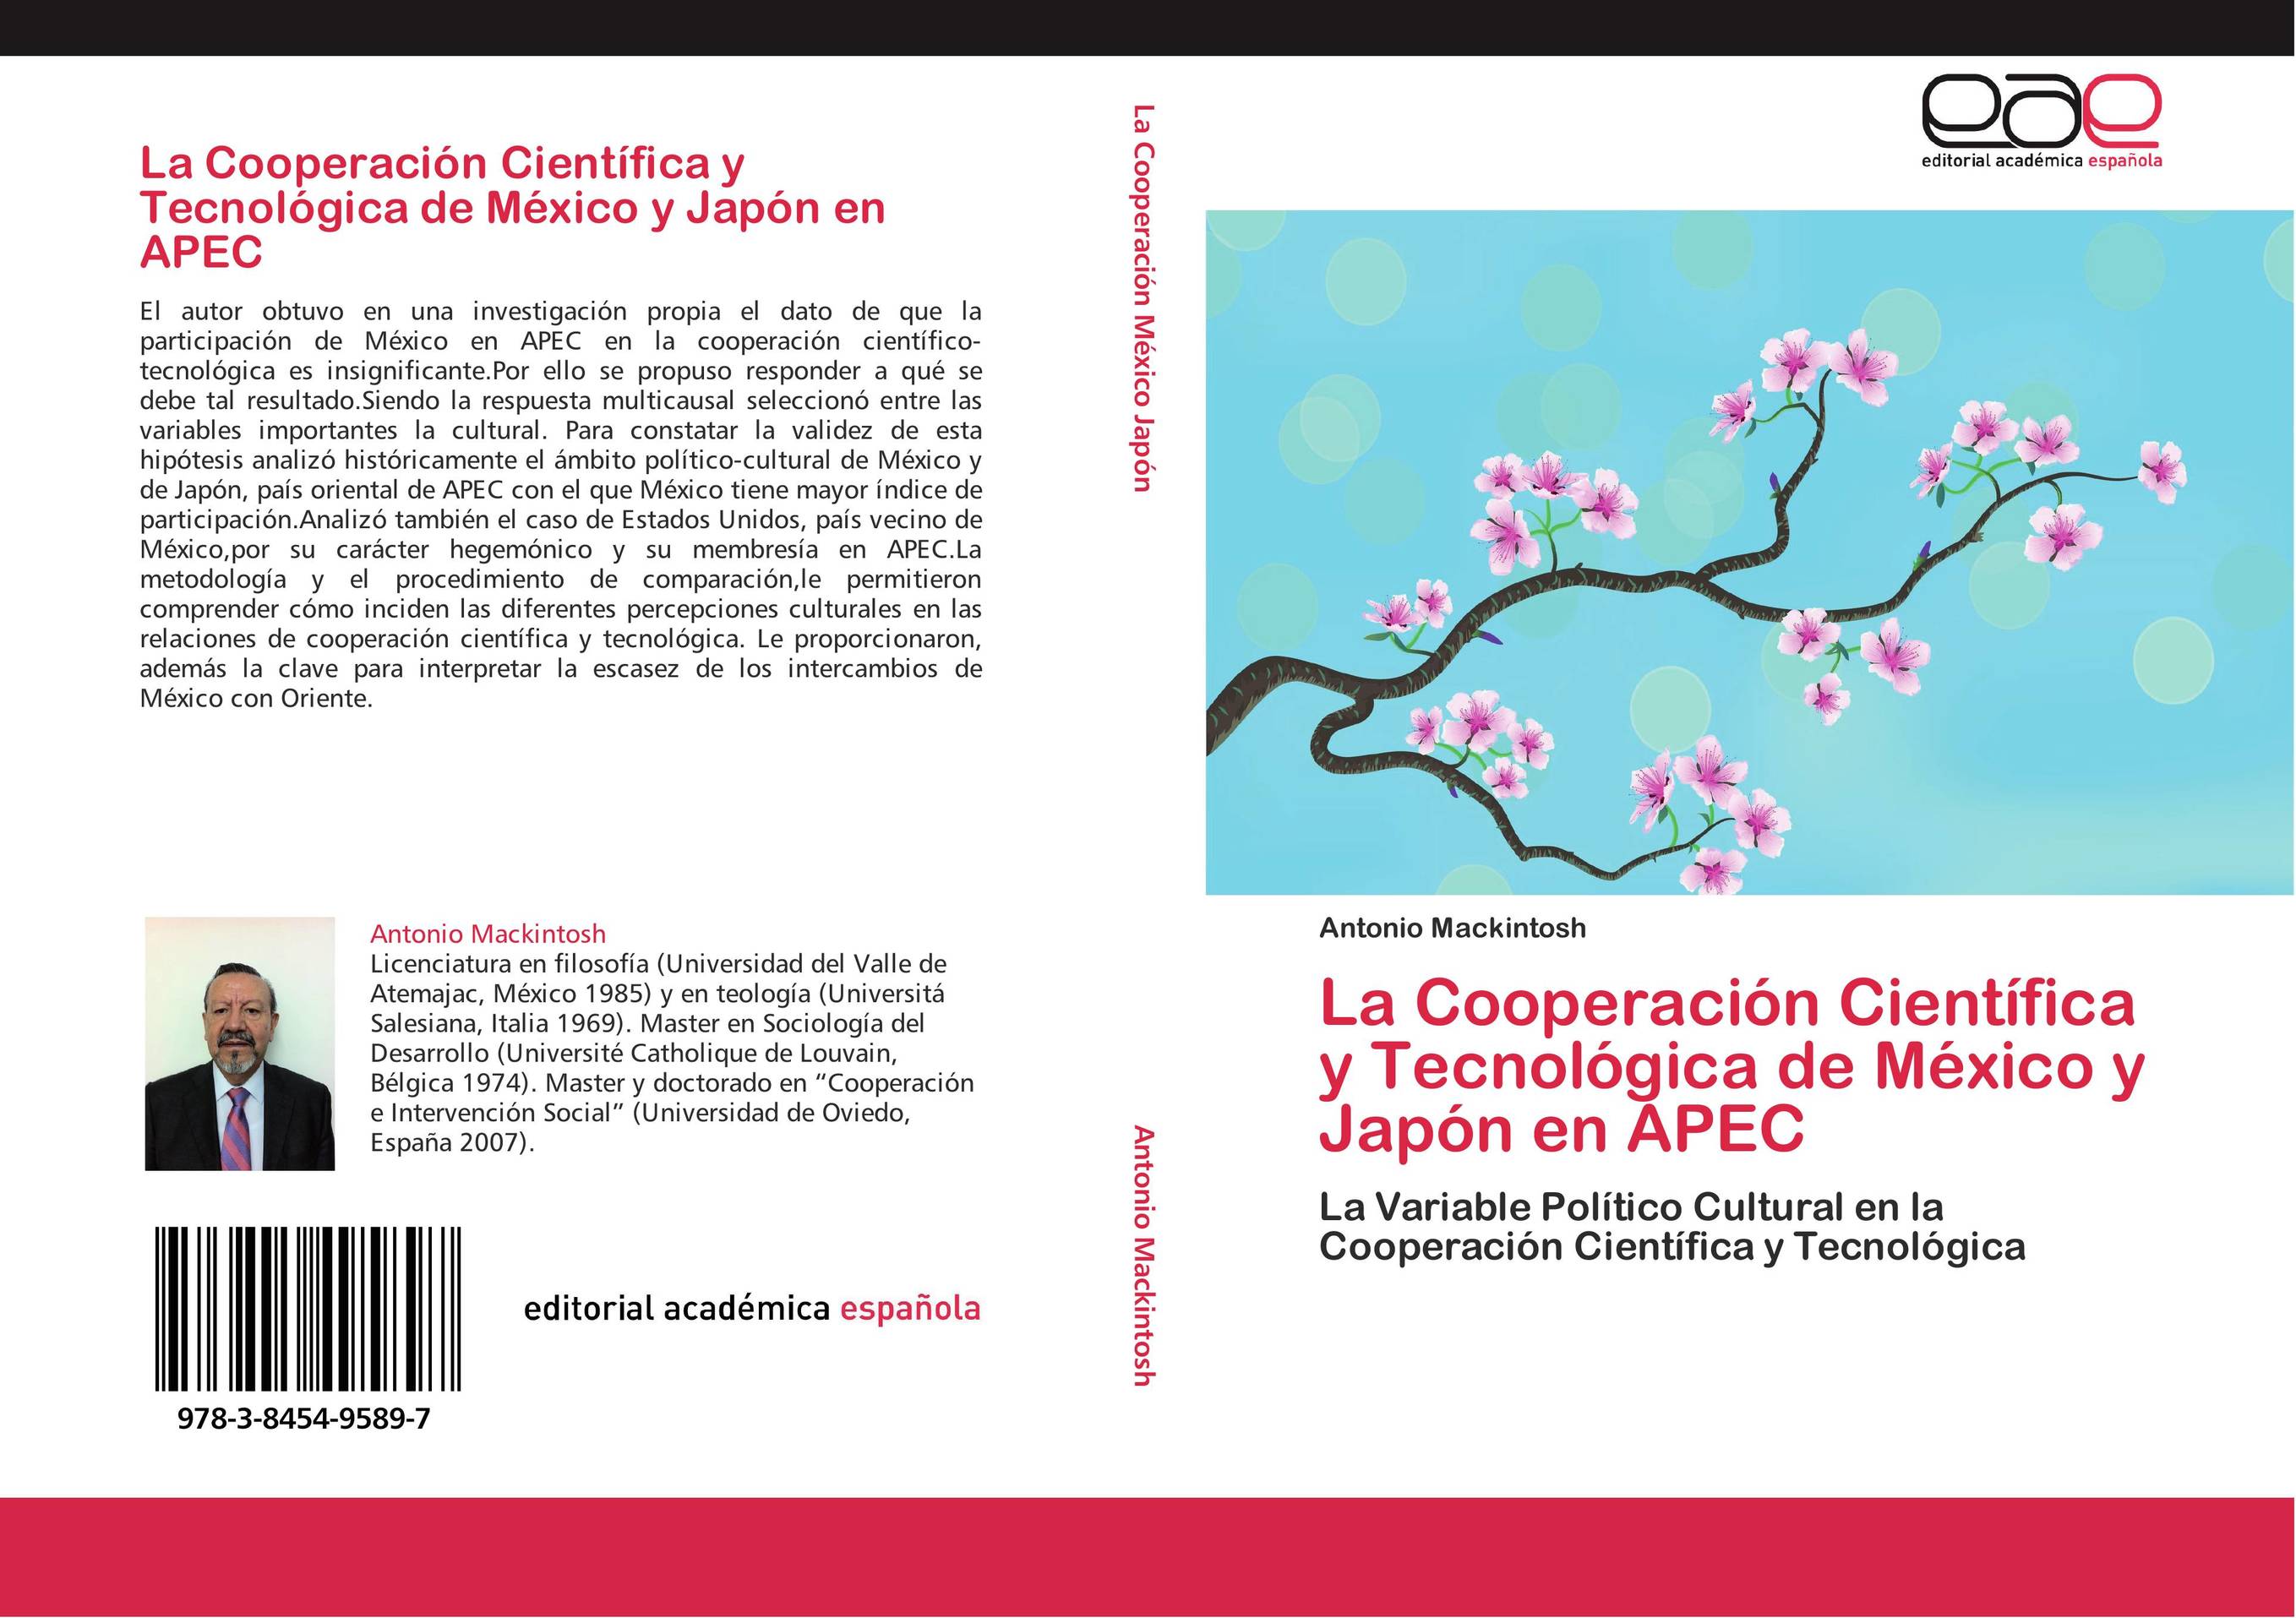 La Cooperación Científica y Tecnológica de México y Japón en APEC